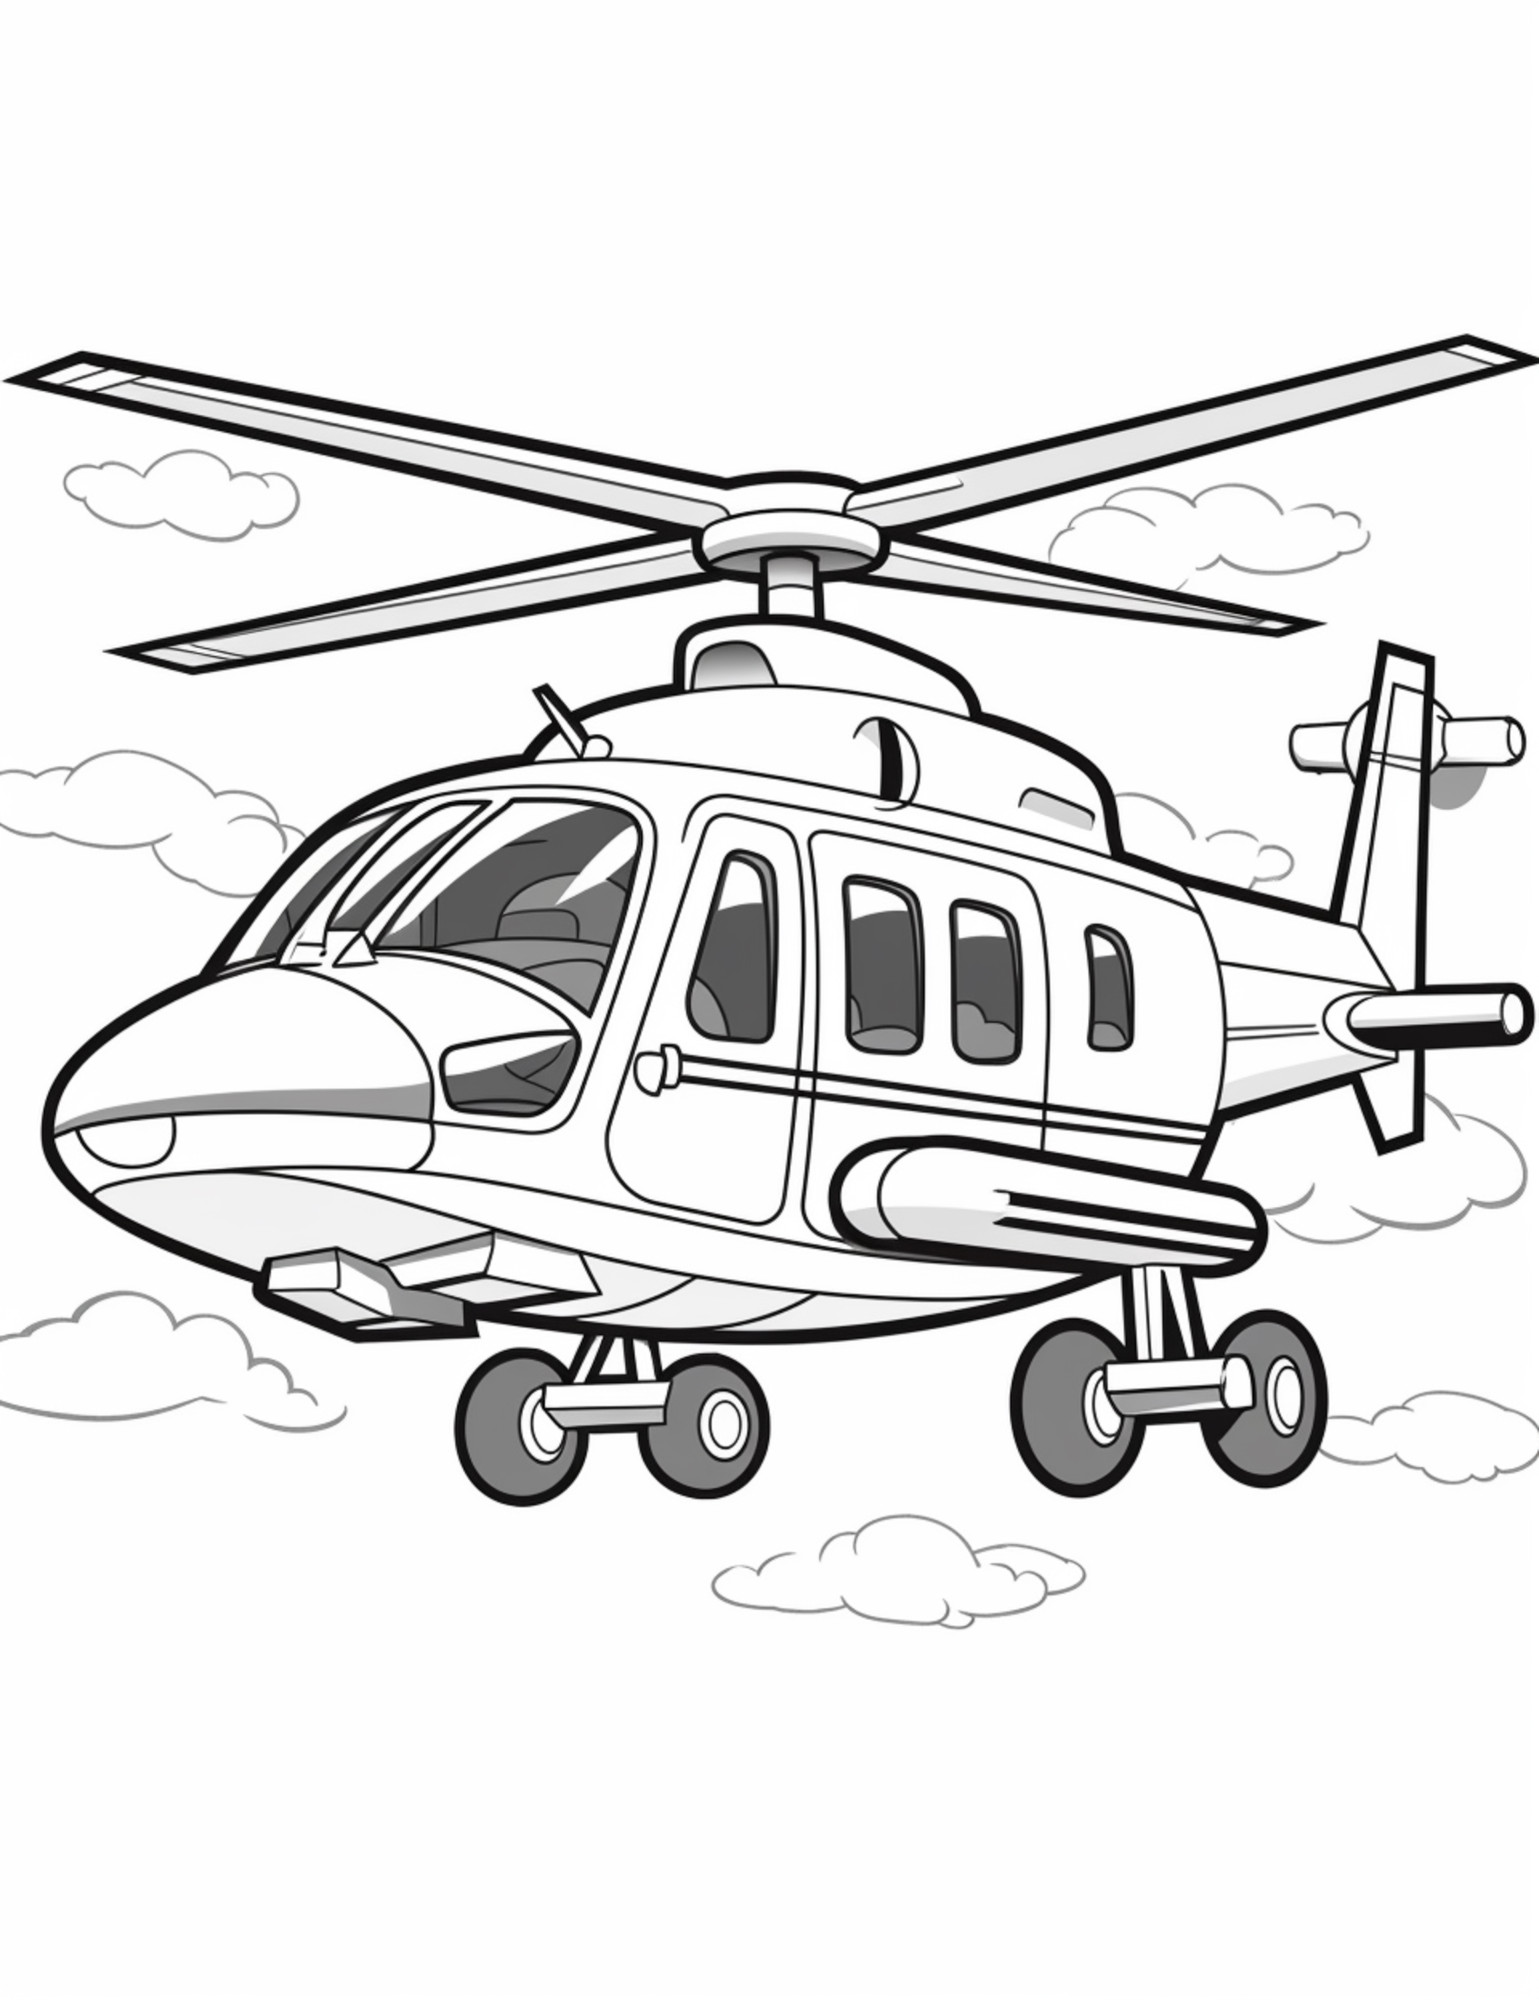 Раскраска для детей: вертолет «Вихрь»